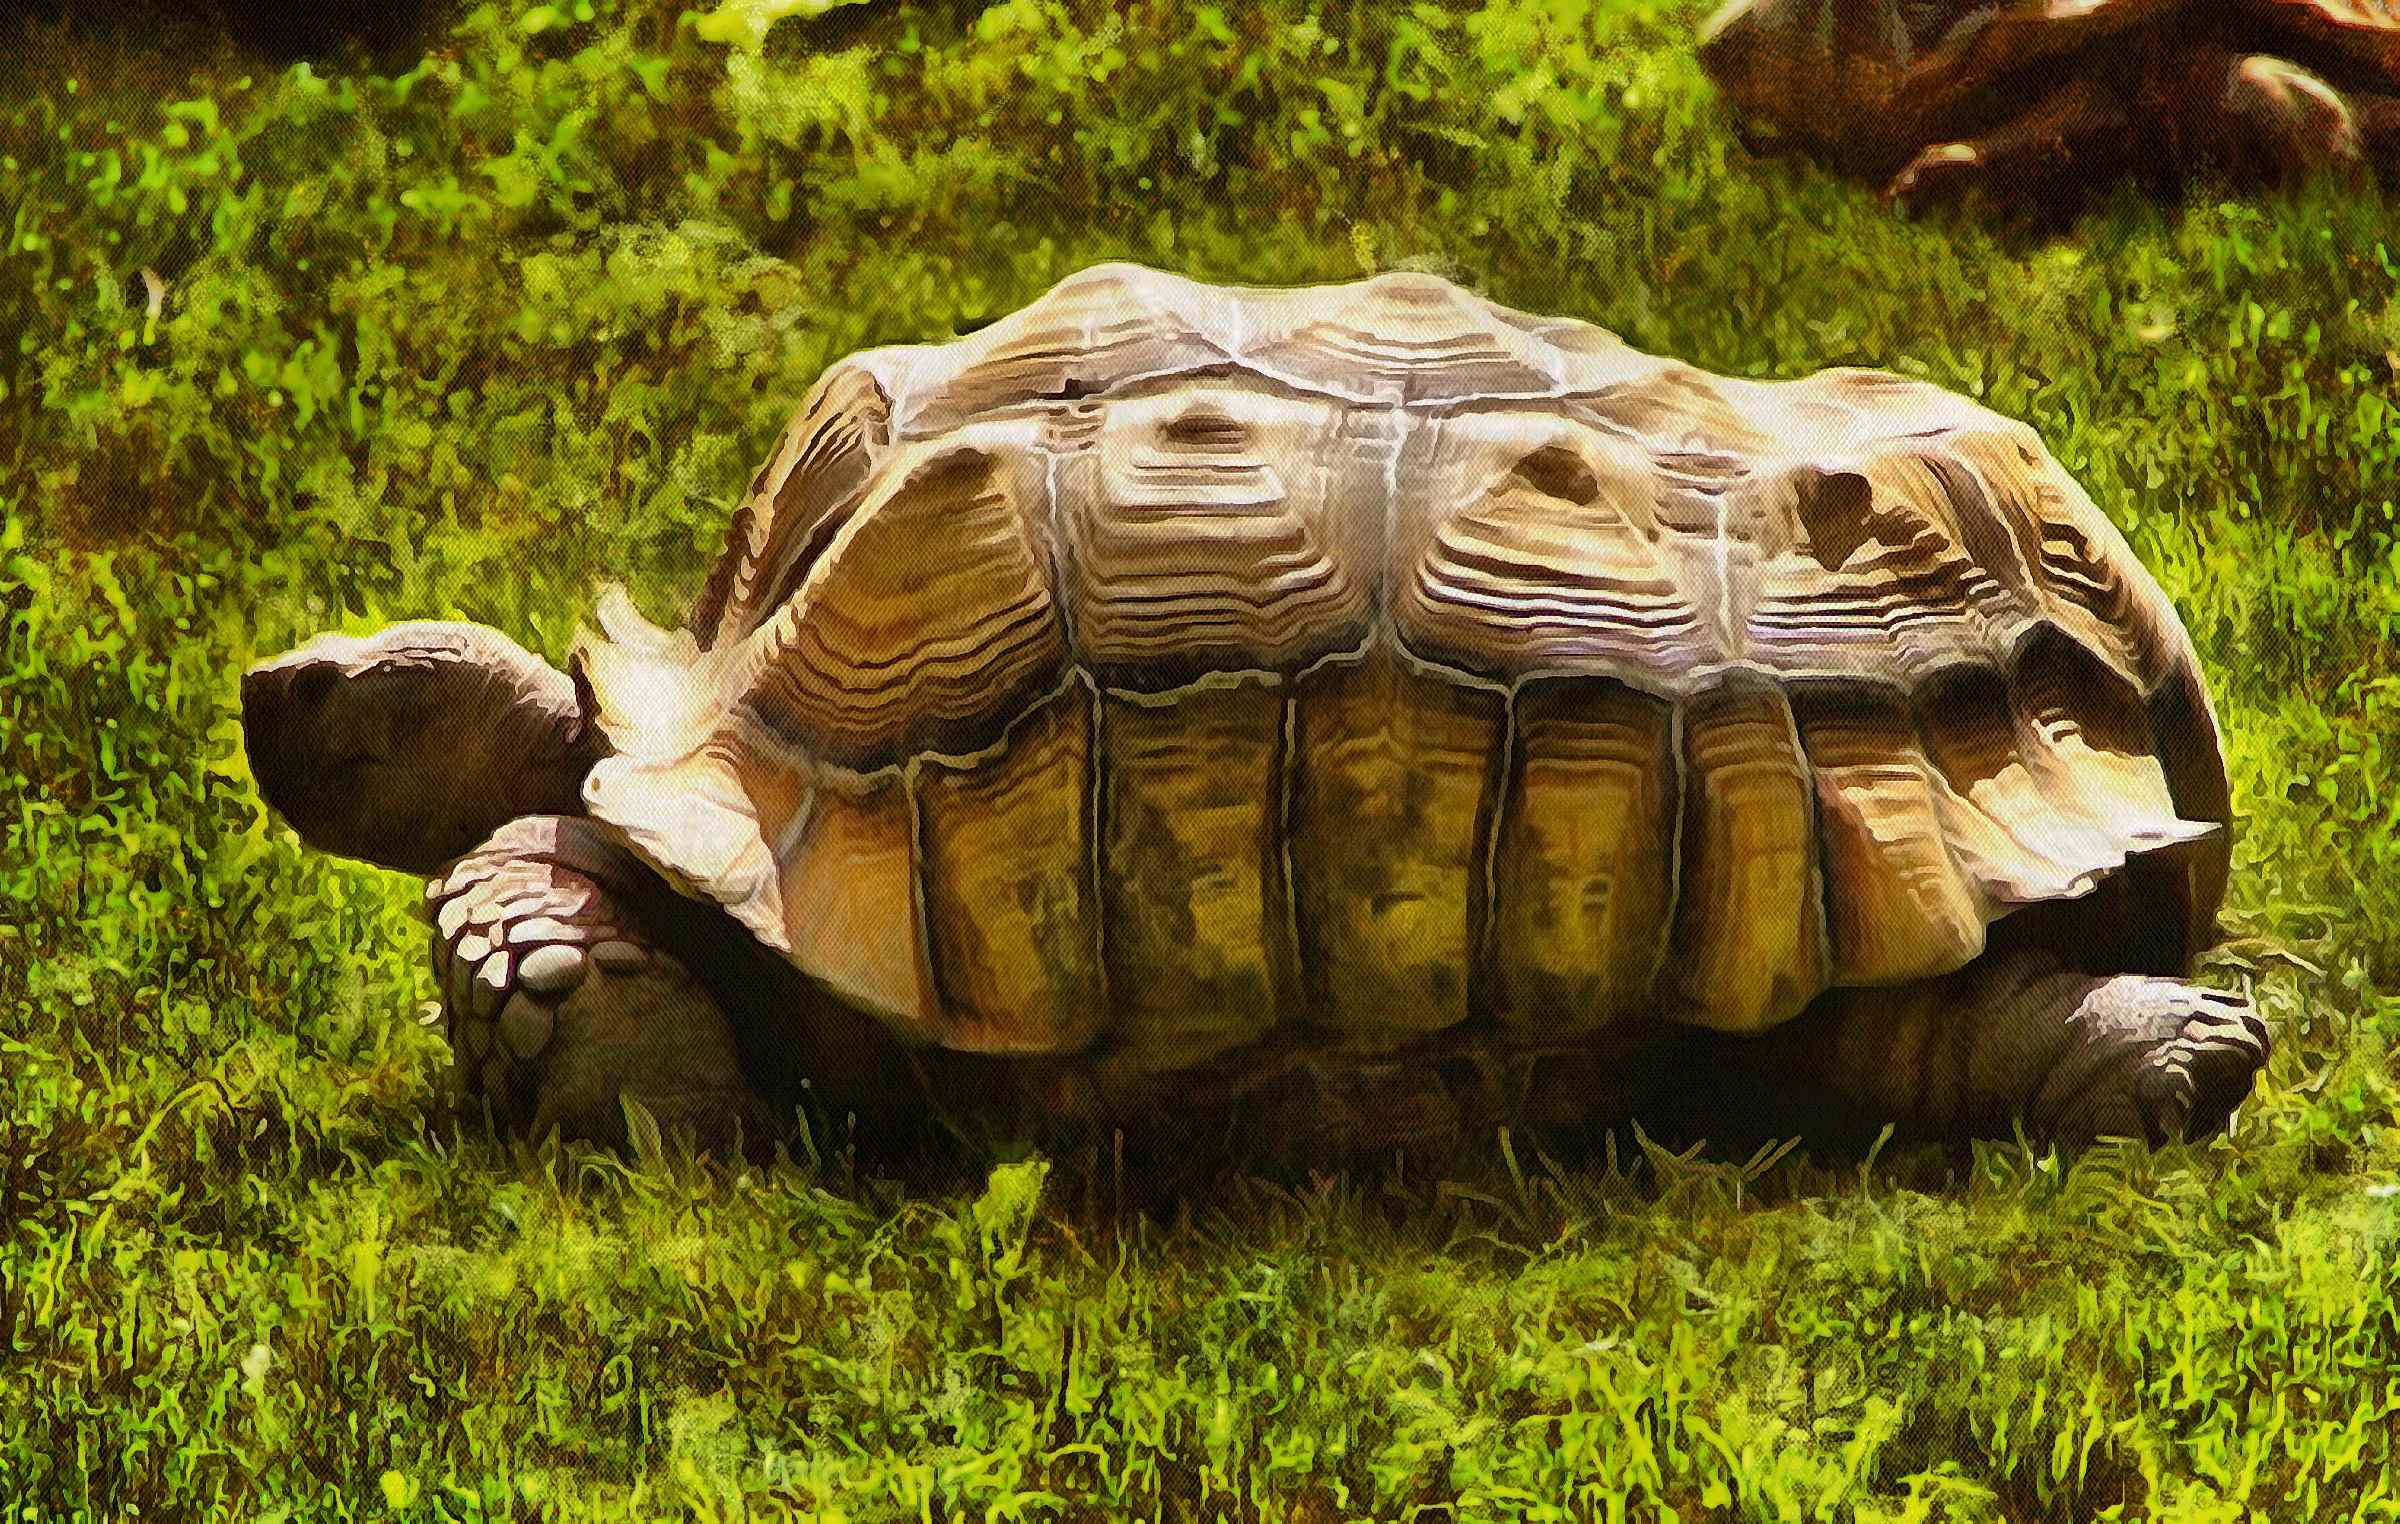 Leatherback, turtle, Turtle, Tortoise, Turtle free images,  – Turtle free images, Tortoise free , Turtle stock free images, Download free images turtles, tortoise free images, tortoise public domain images!